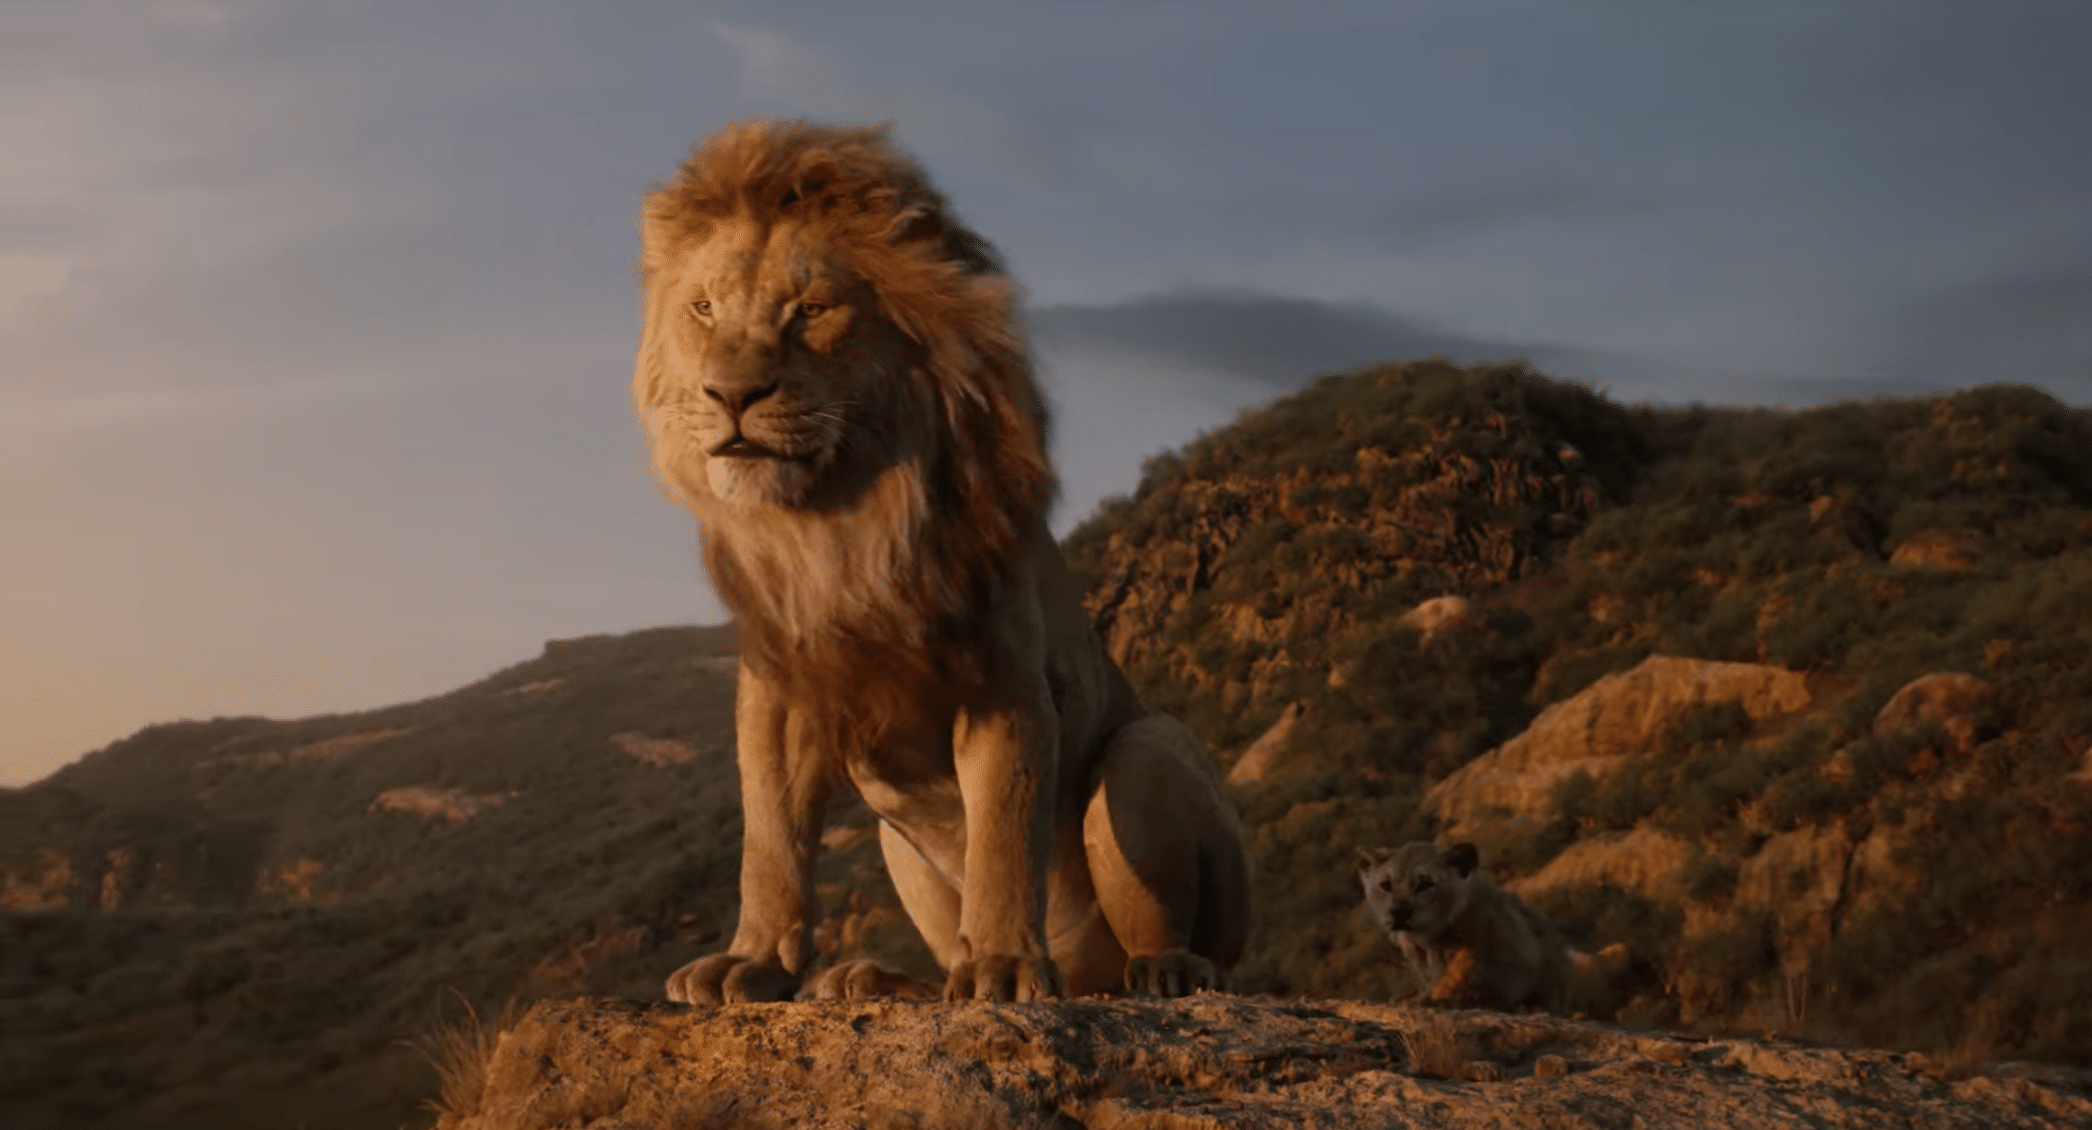 Le Roi Lion : Dans le dernier teaser, Childish Gambino reprend "Hakuna Matata"